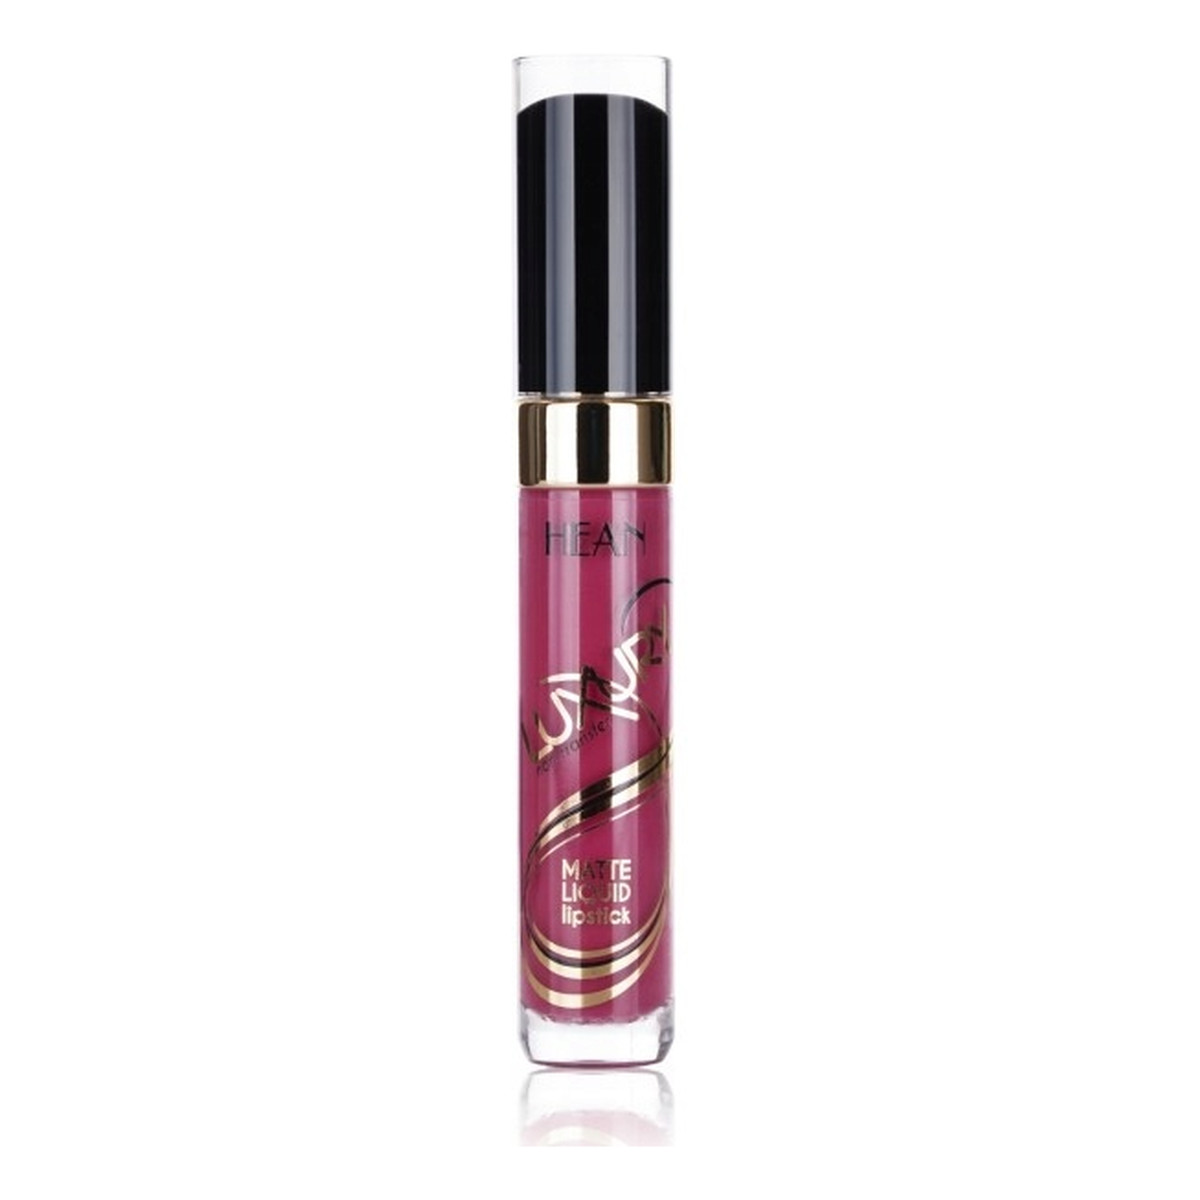 Hean Luxury matte liquid lipstick Trwała matowa pomadka do ust w płynie 8ml